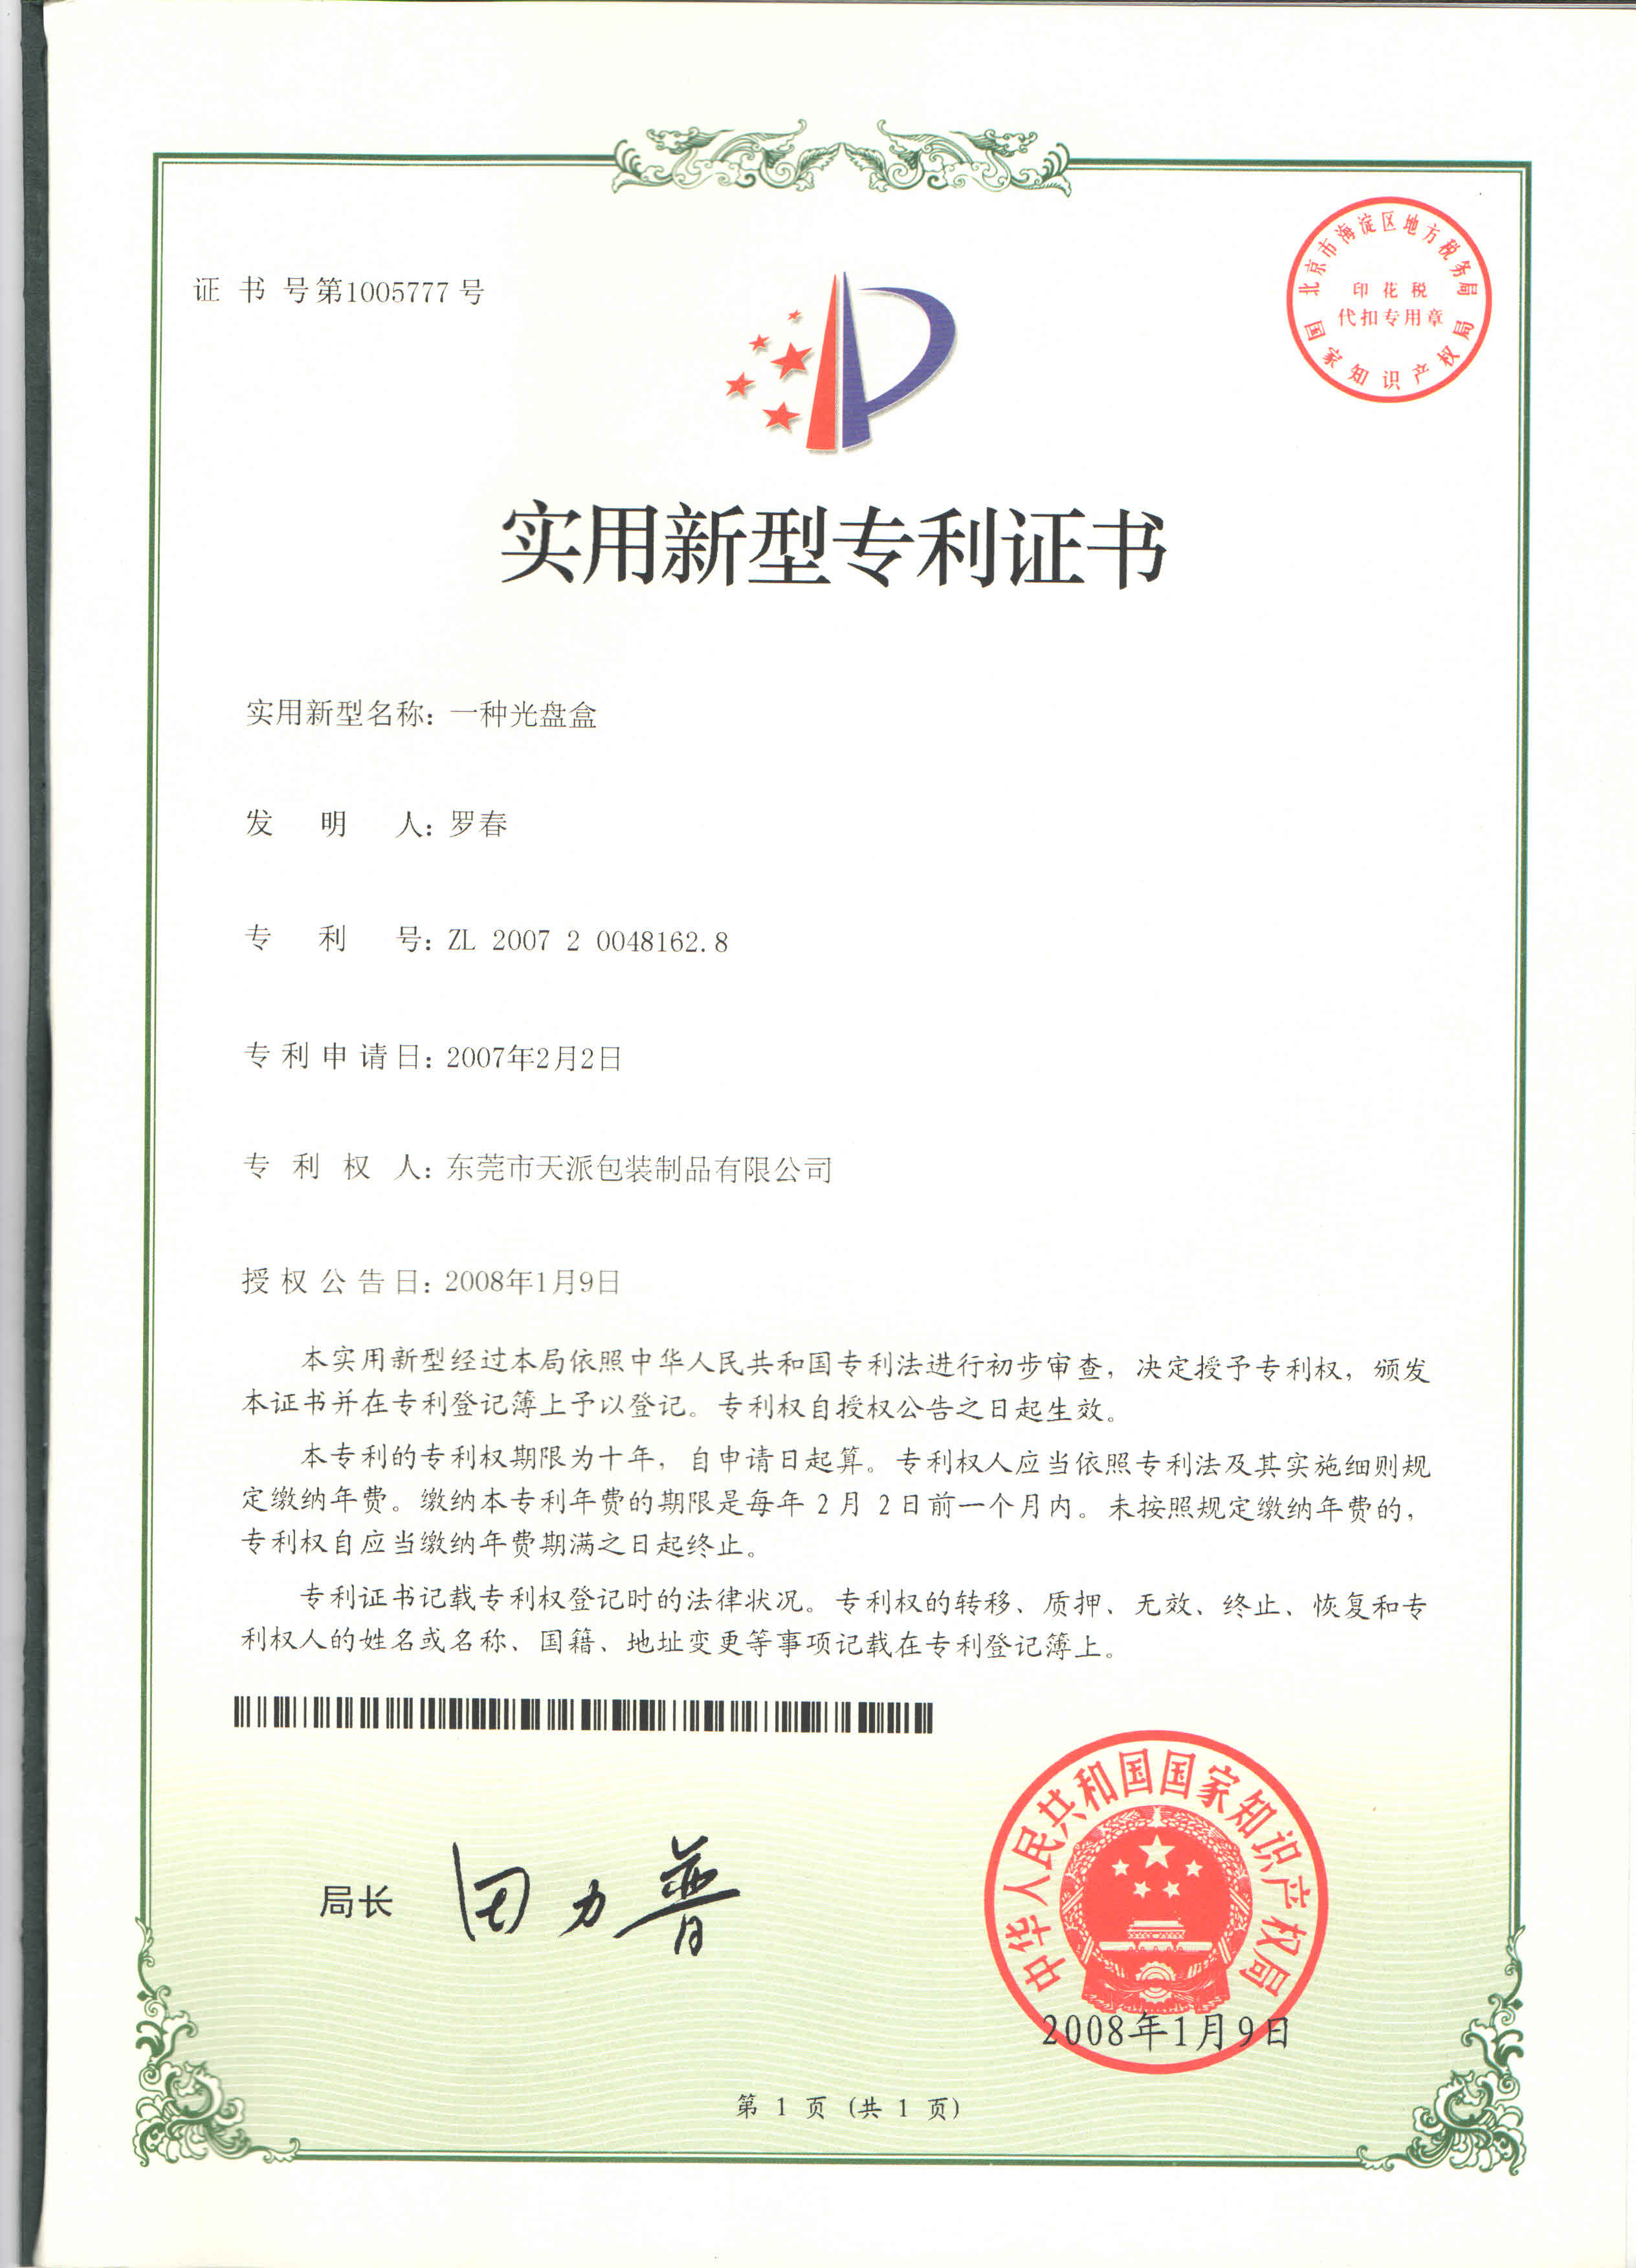 圆形层层式茶叶包装铁罐工厂专利证书